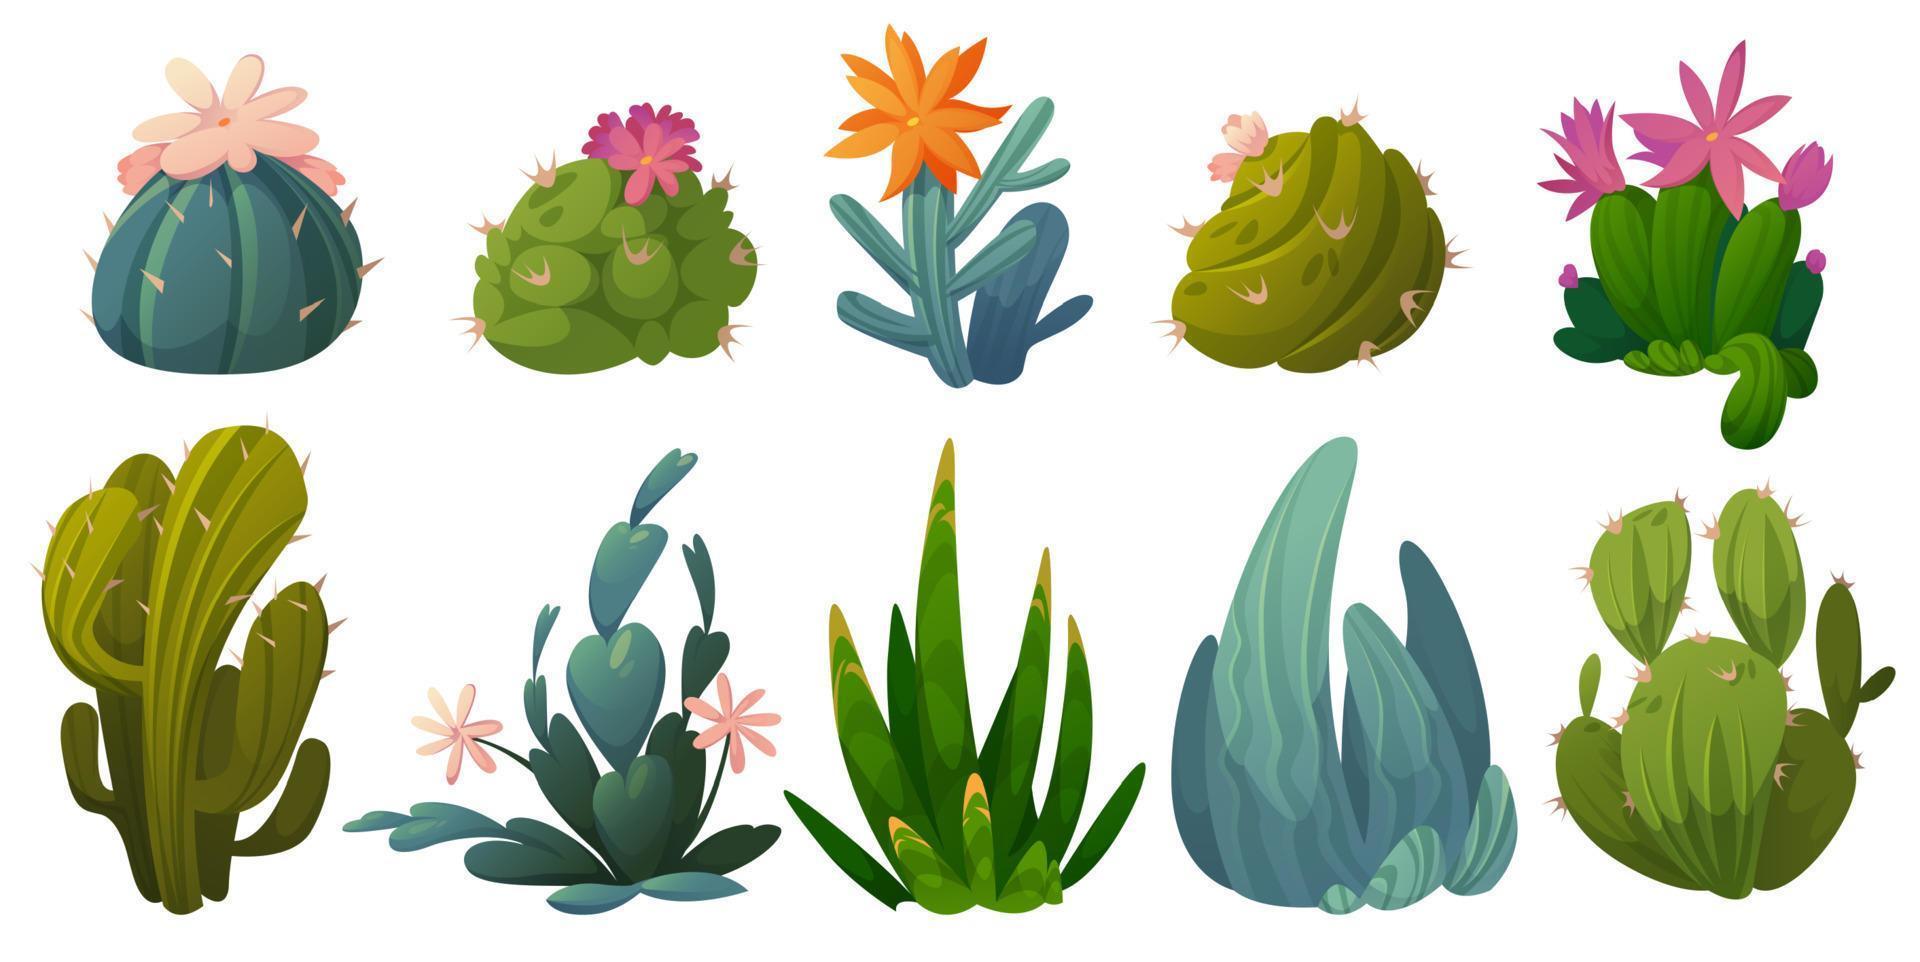 lindos cactus, suculentas y plantas del desierto vector